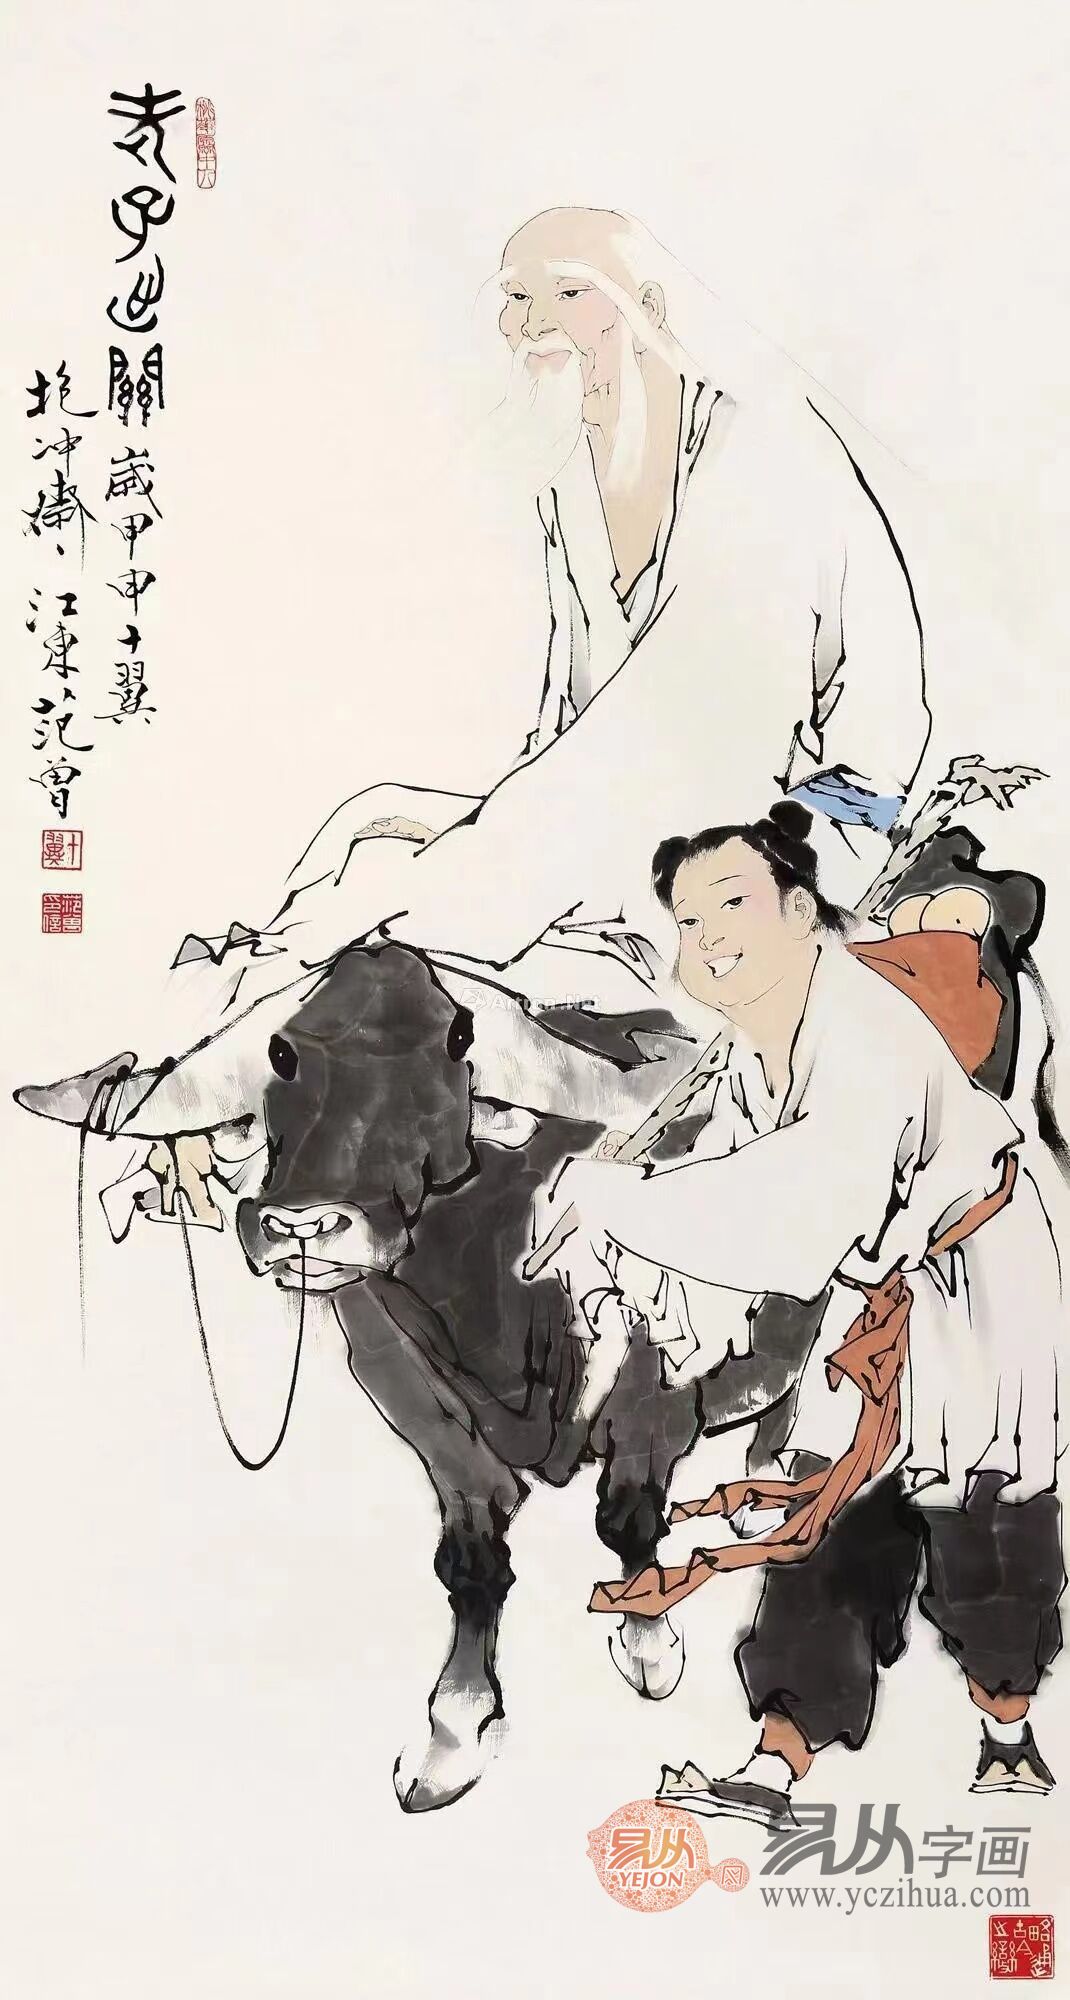 范曾中国人物画 早期图片